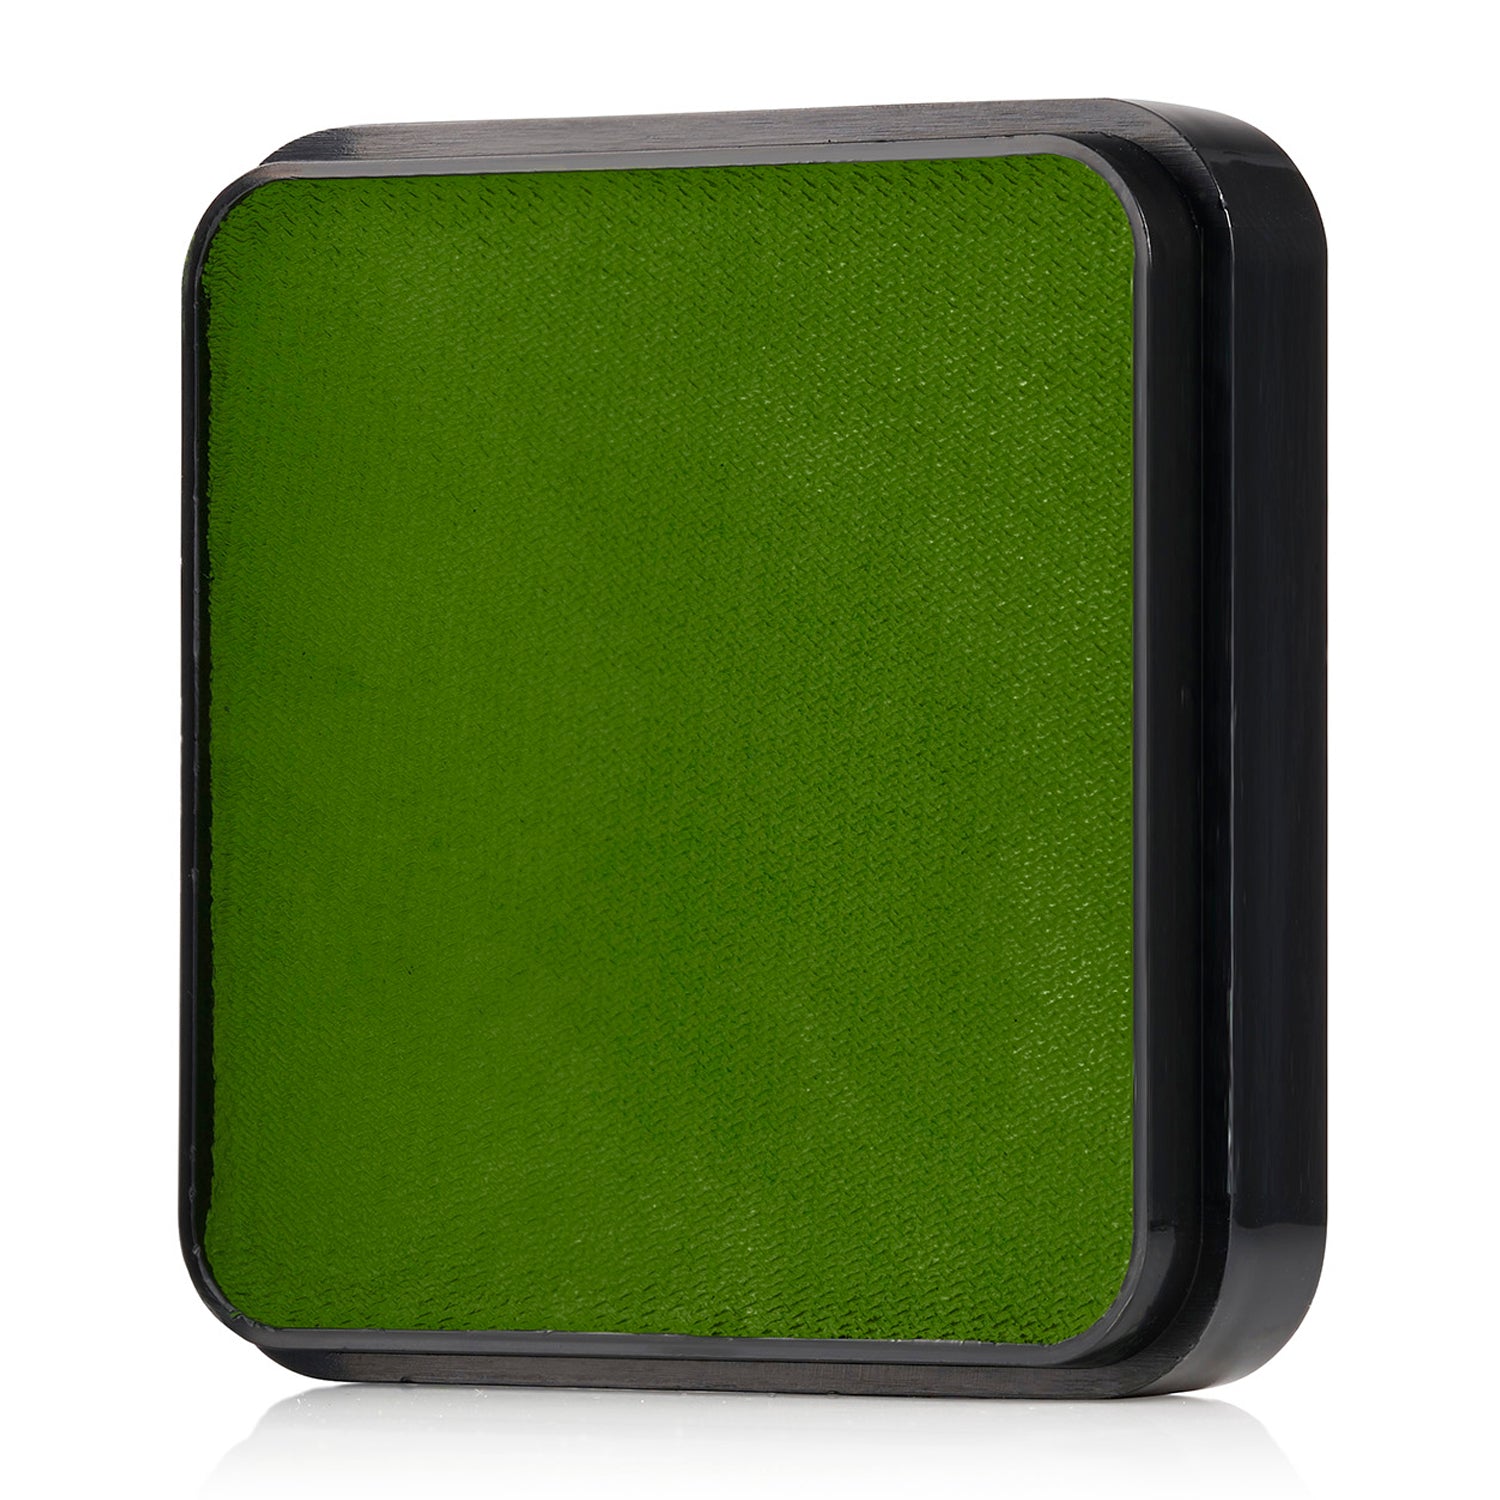 Kraze FX Face & Body Paint - Green (25 gm)